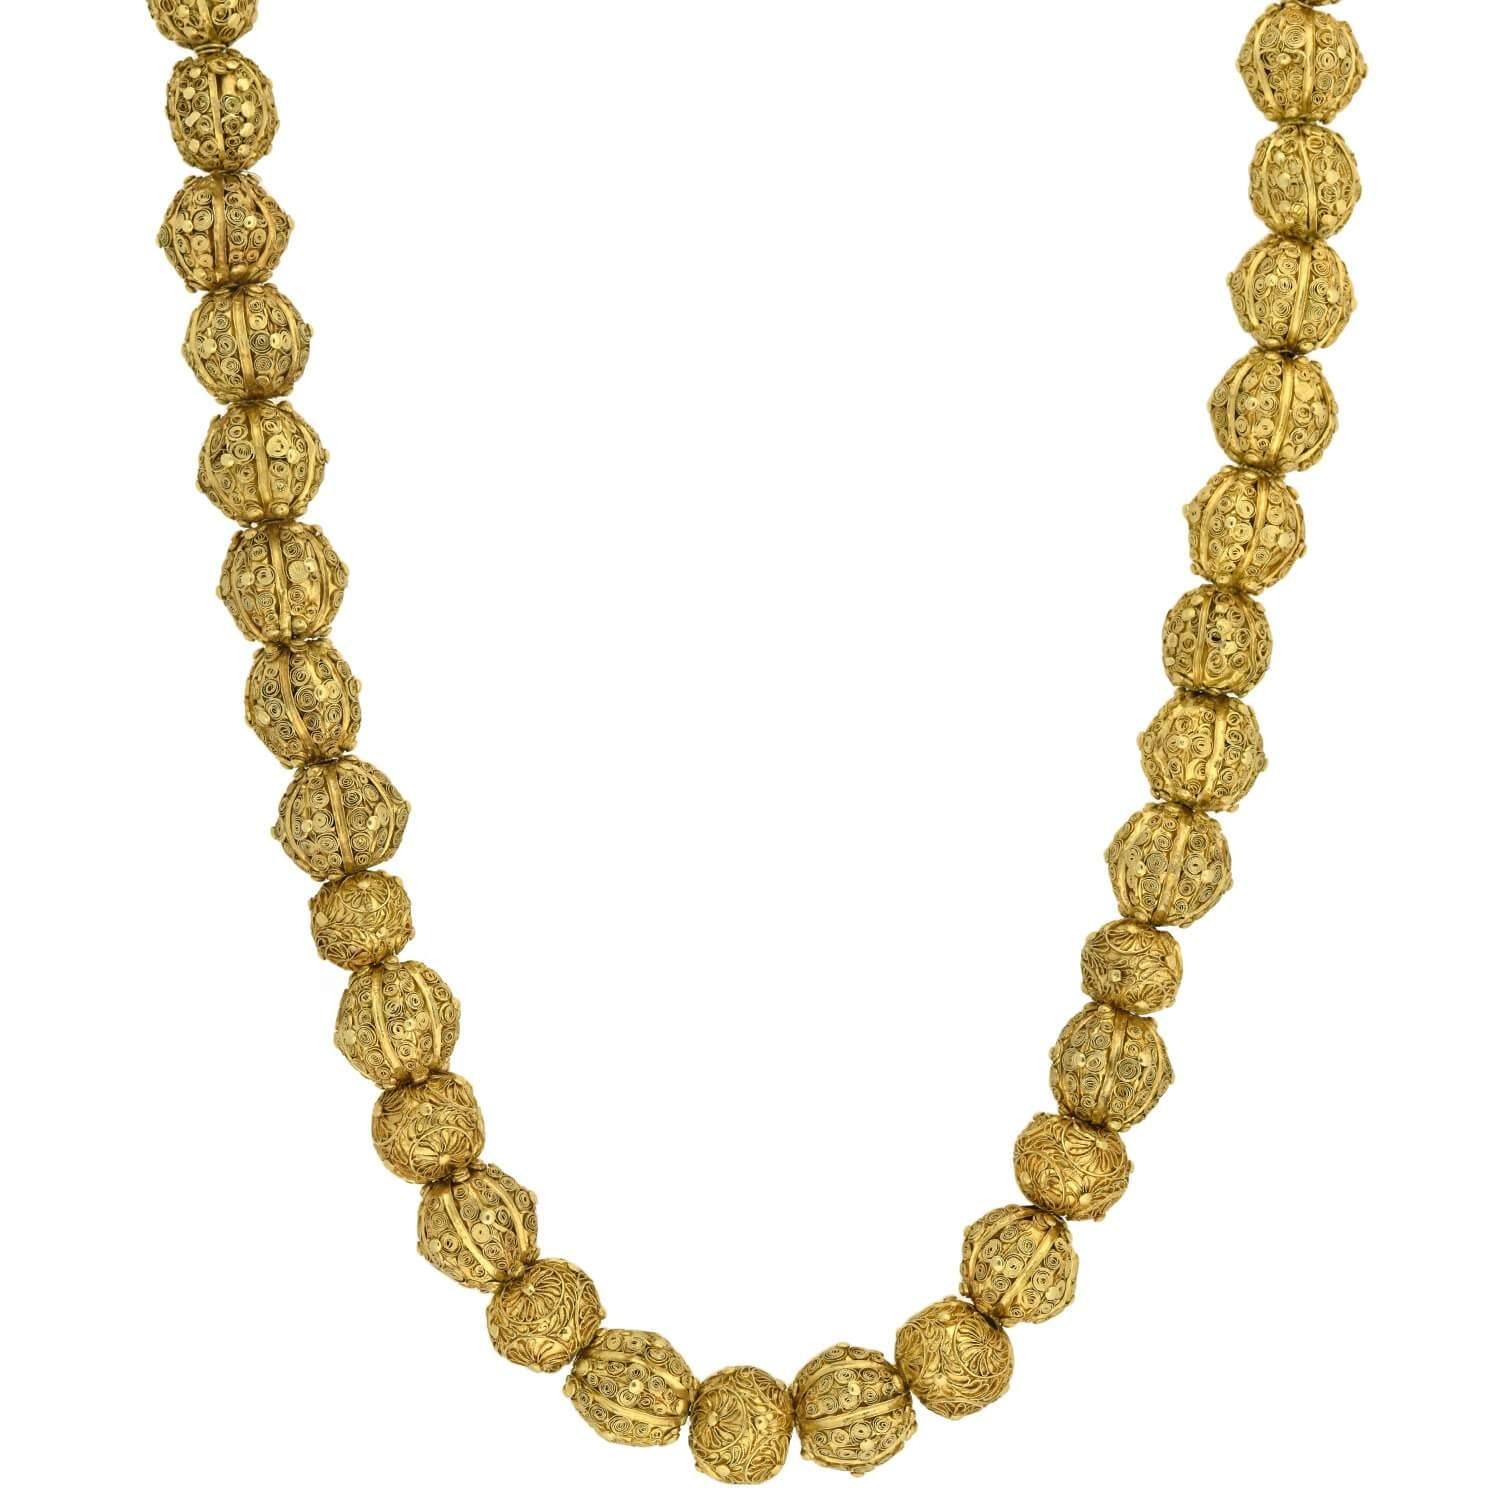 Un collier de perles exceptionnellement étonnant et très rare de l'époque géorgienne (ca1750) ! Cette pièce en or jaune 22 carats est composée de 43 perles travaillées à la main et joliment décorées d'un travail de surface en fil métallique. Elle